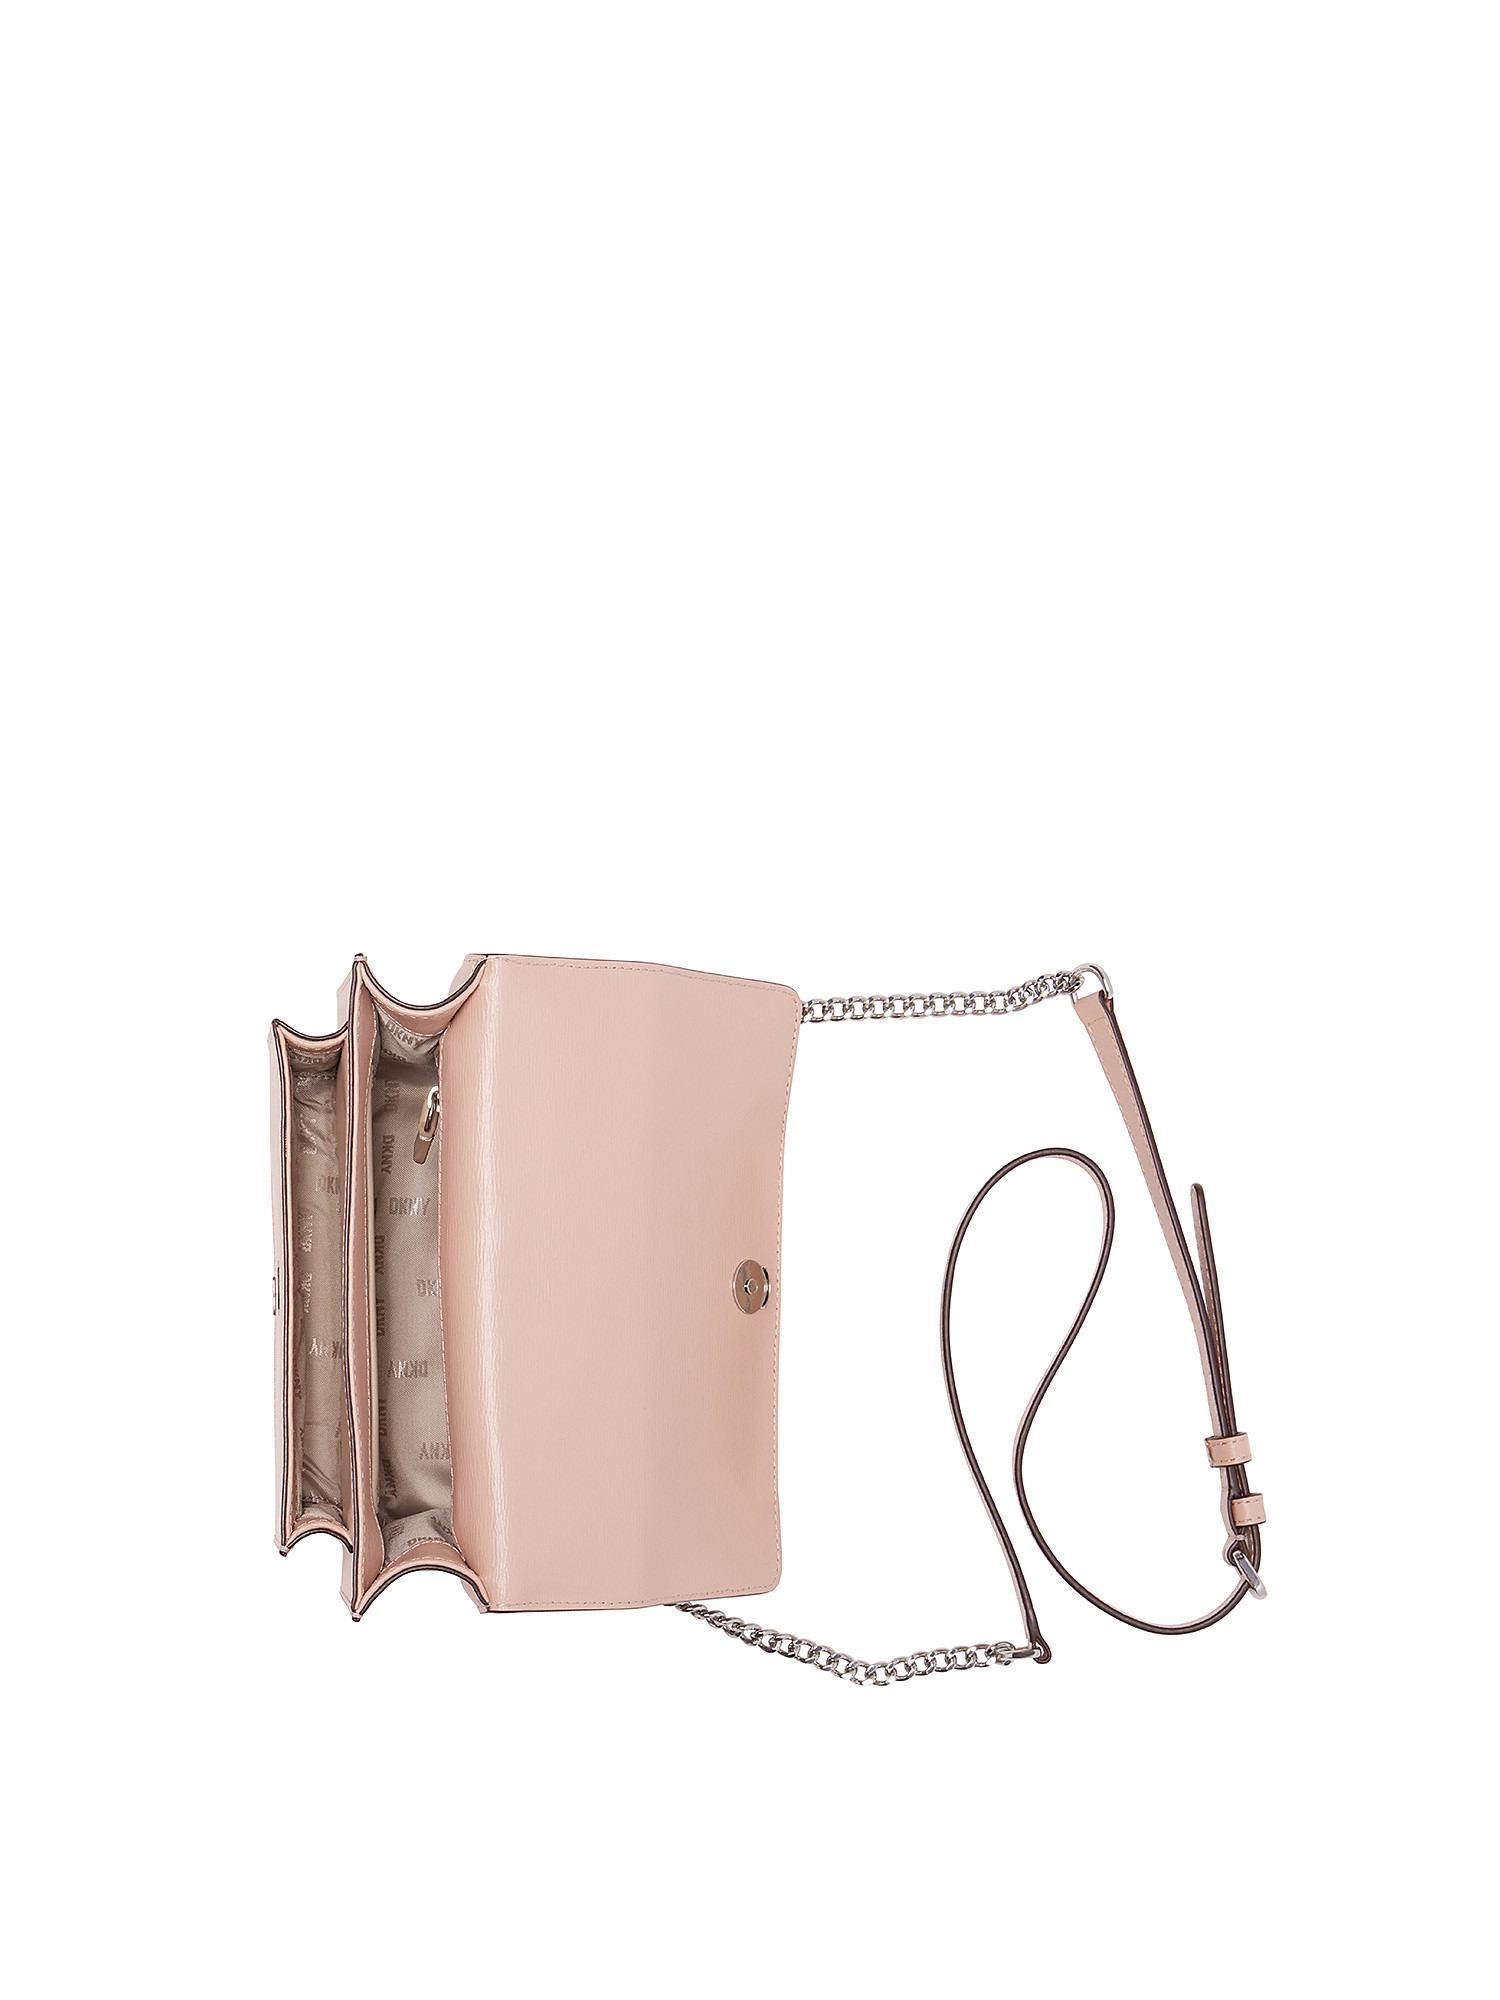 Dkny - Flap shoulder bag with logo, Light Pink, large image number 3